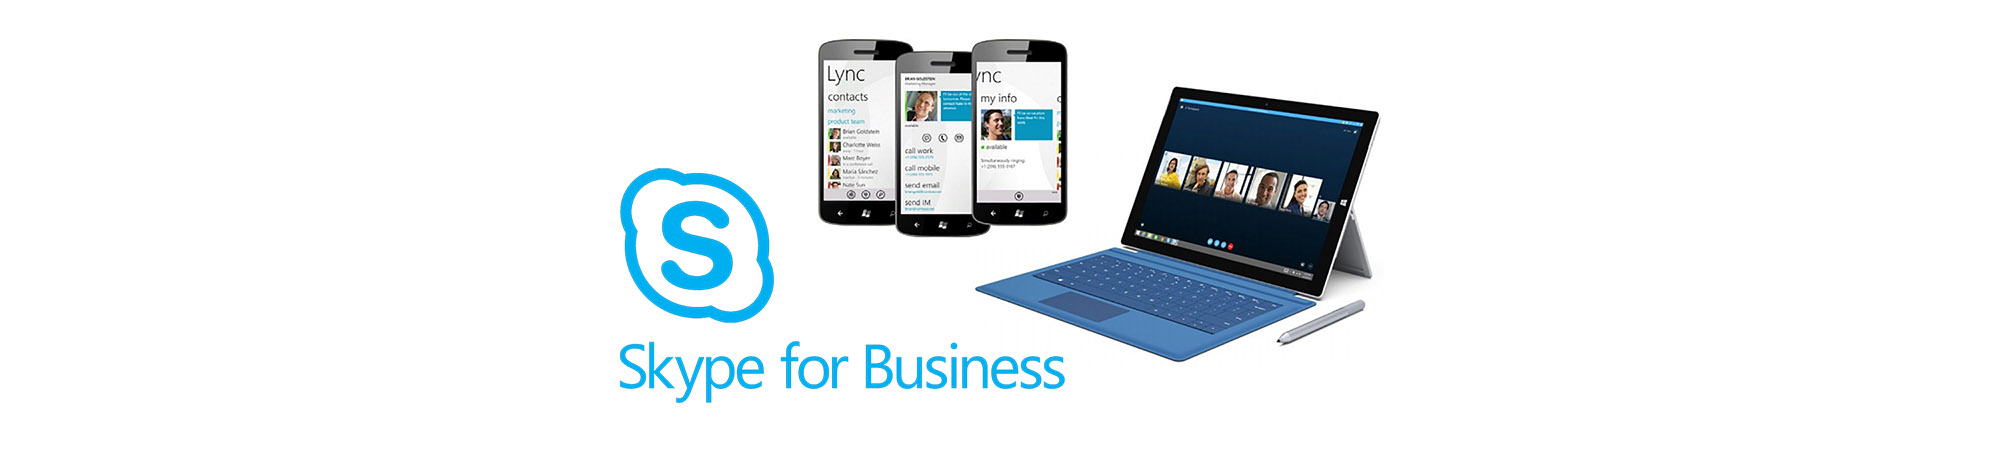 Skype For Business banner